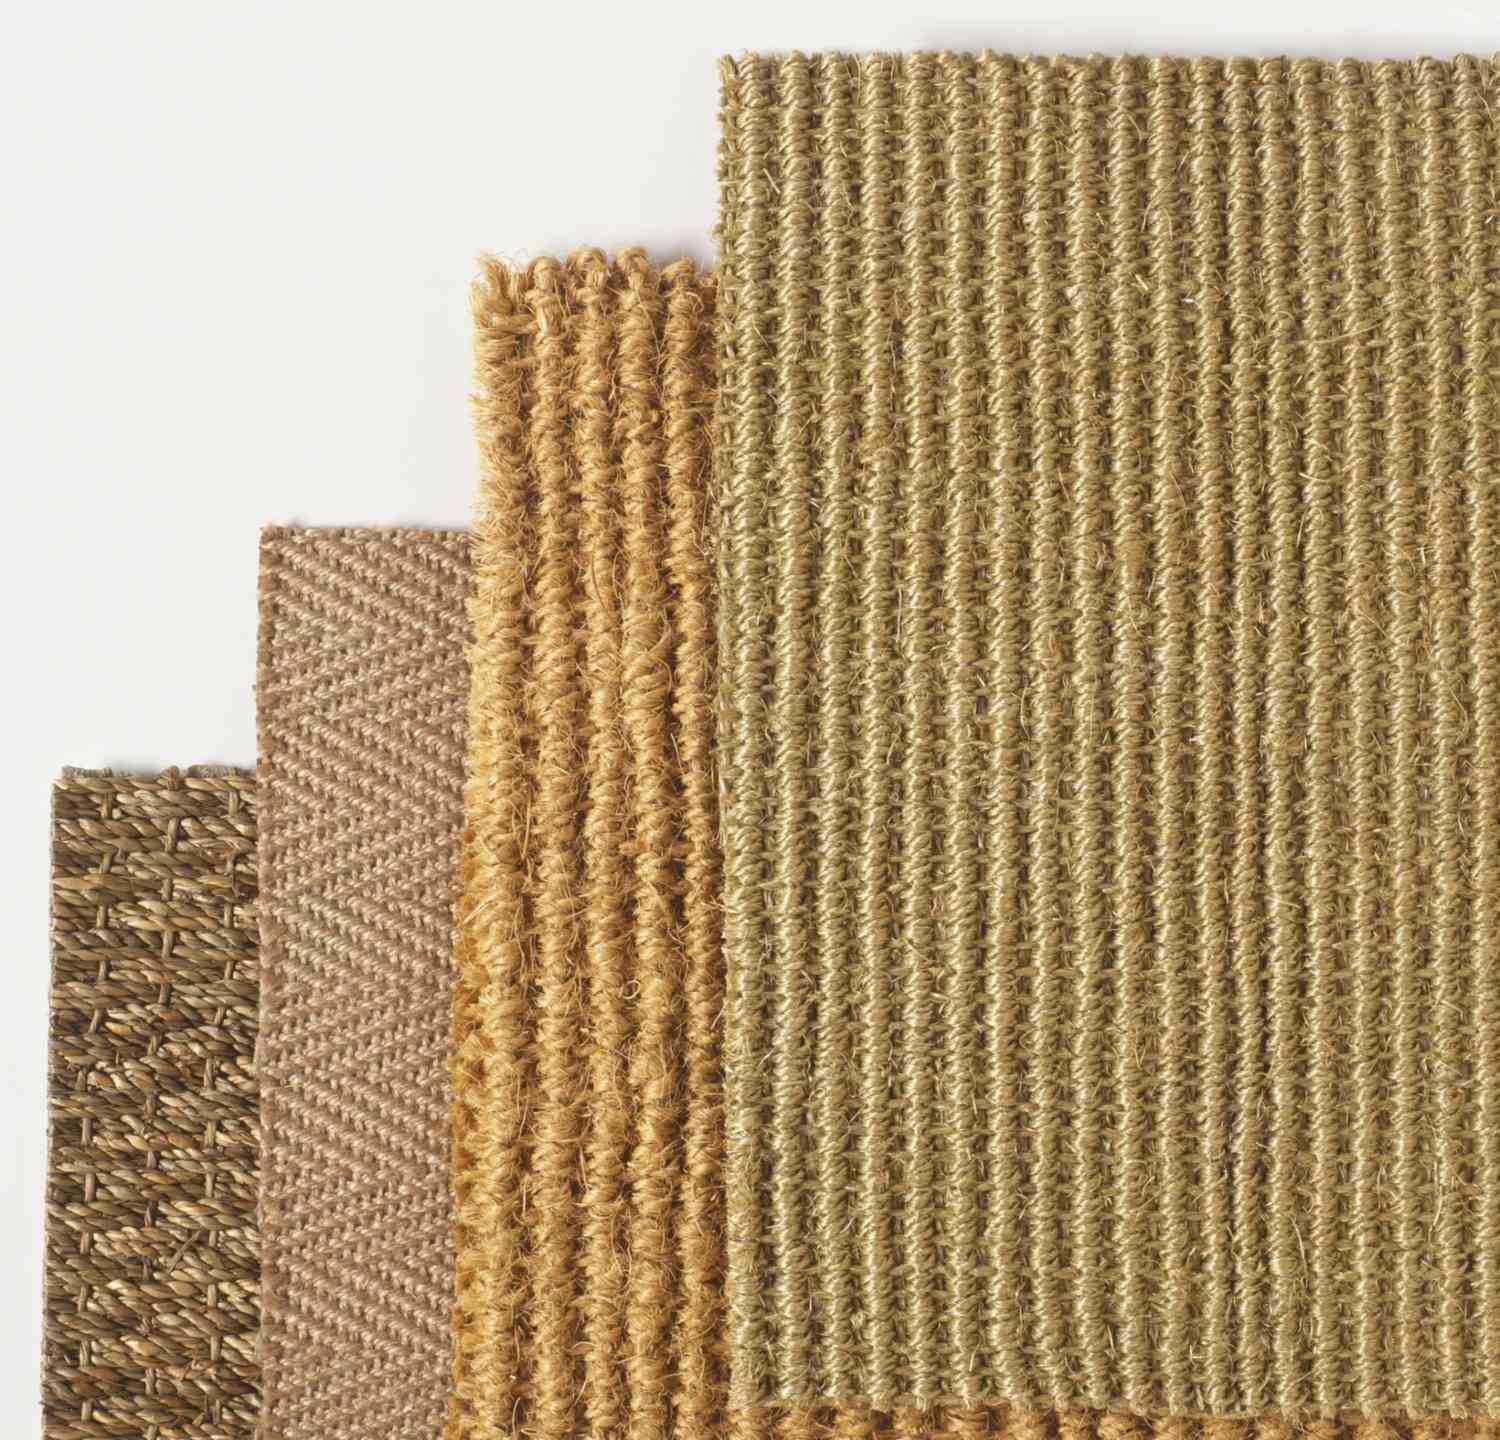 Comparaison des fibres naturelles et synthétiques de moquette